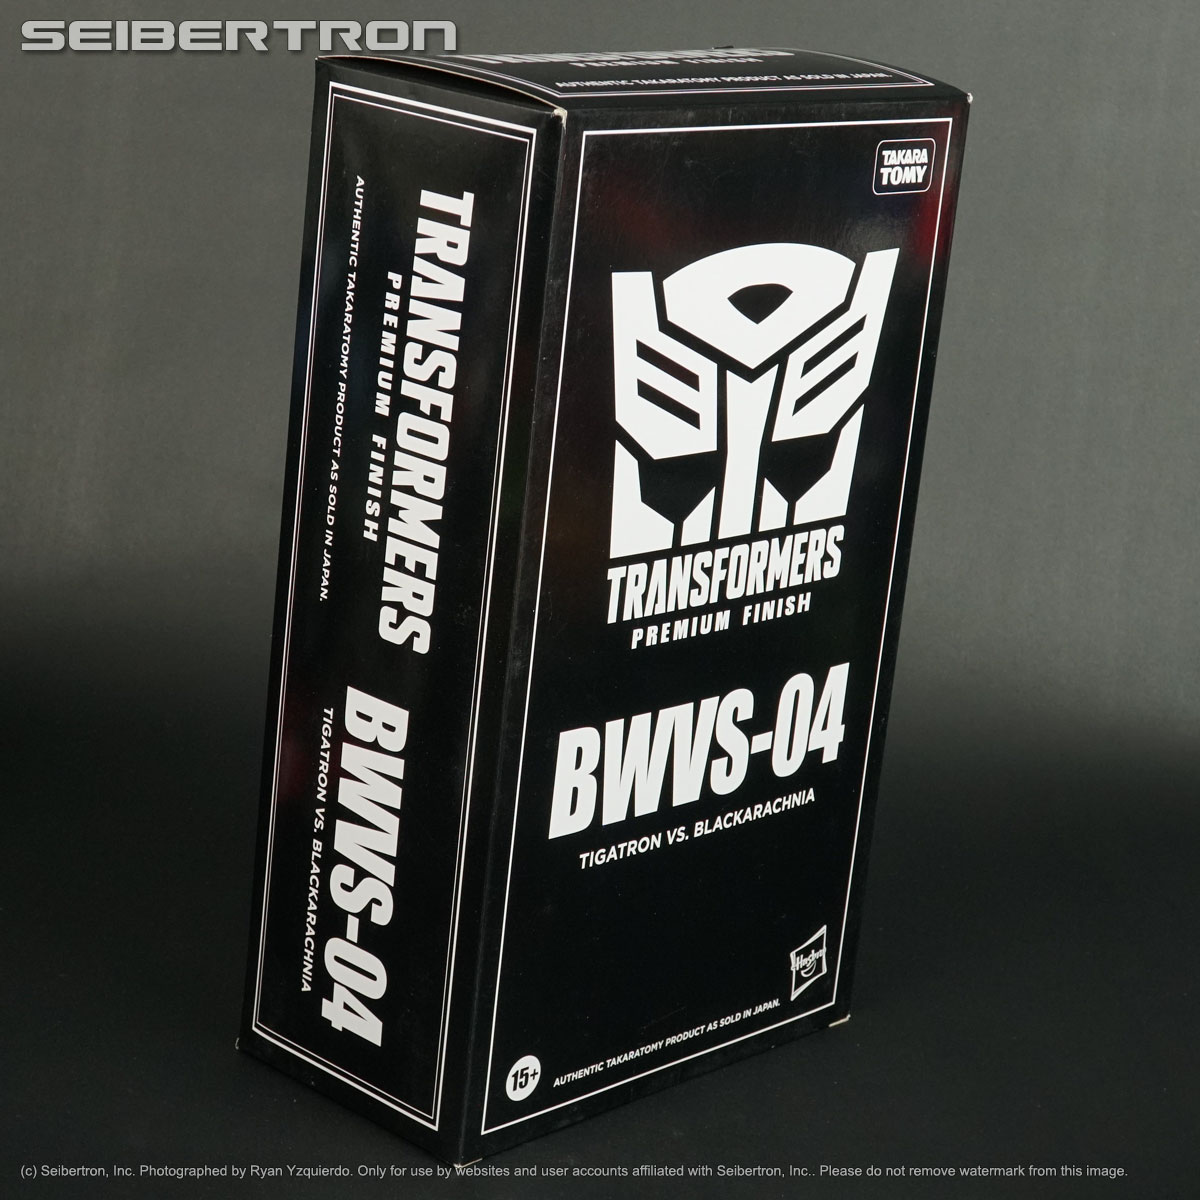 BWVS-04 TIGATRON + BLACKARACHNIA Transformers Beast Wars Again Kingdom Hasbro 2024 New